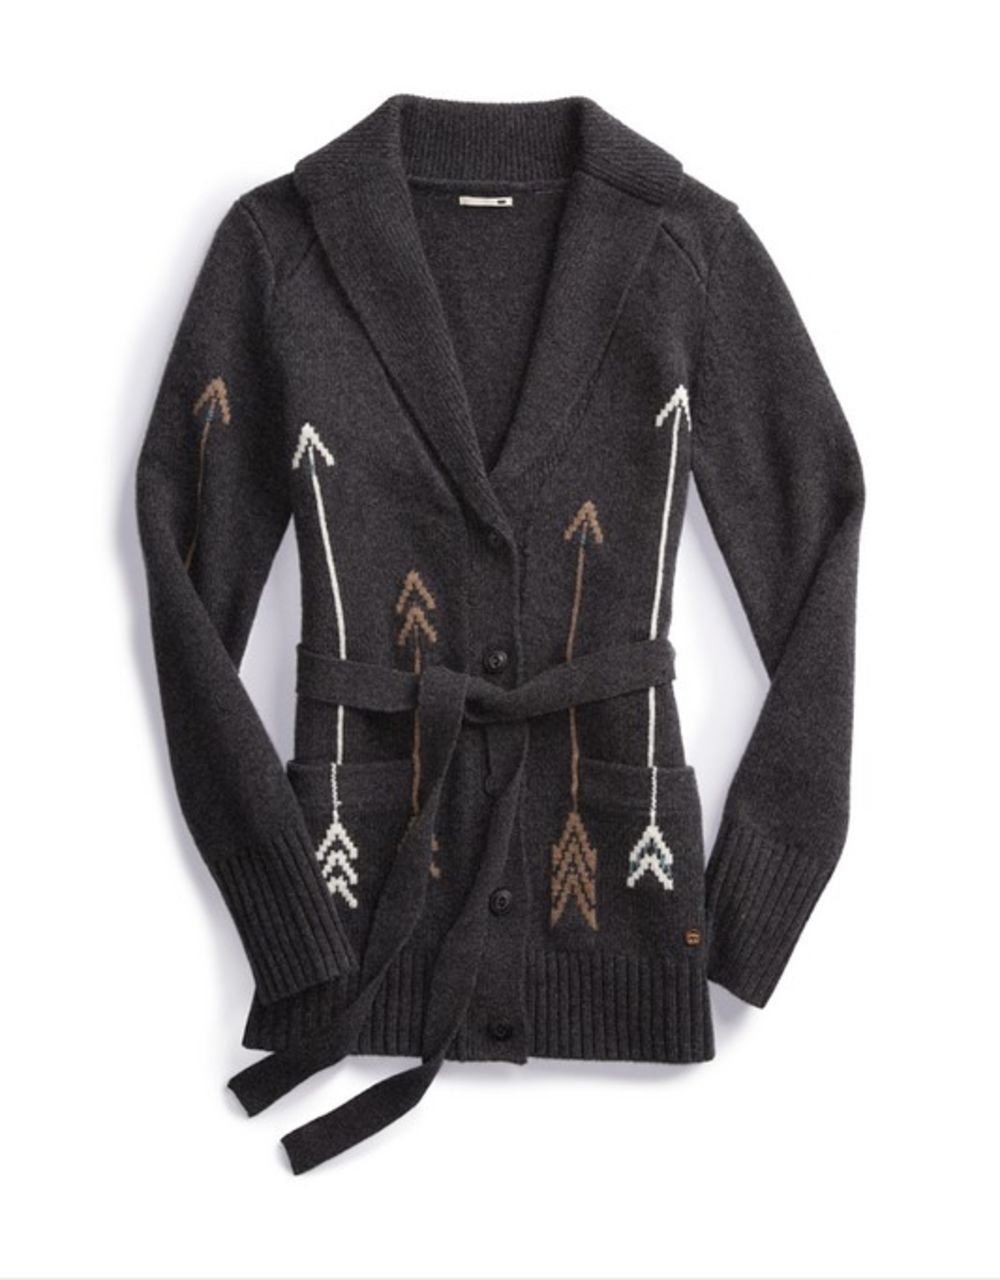 Džemper LEVIS, cena: 15.600 din